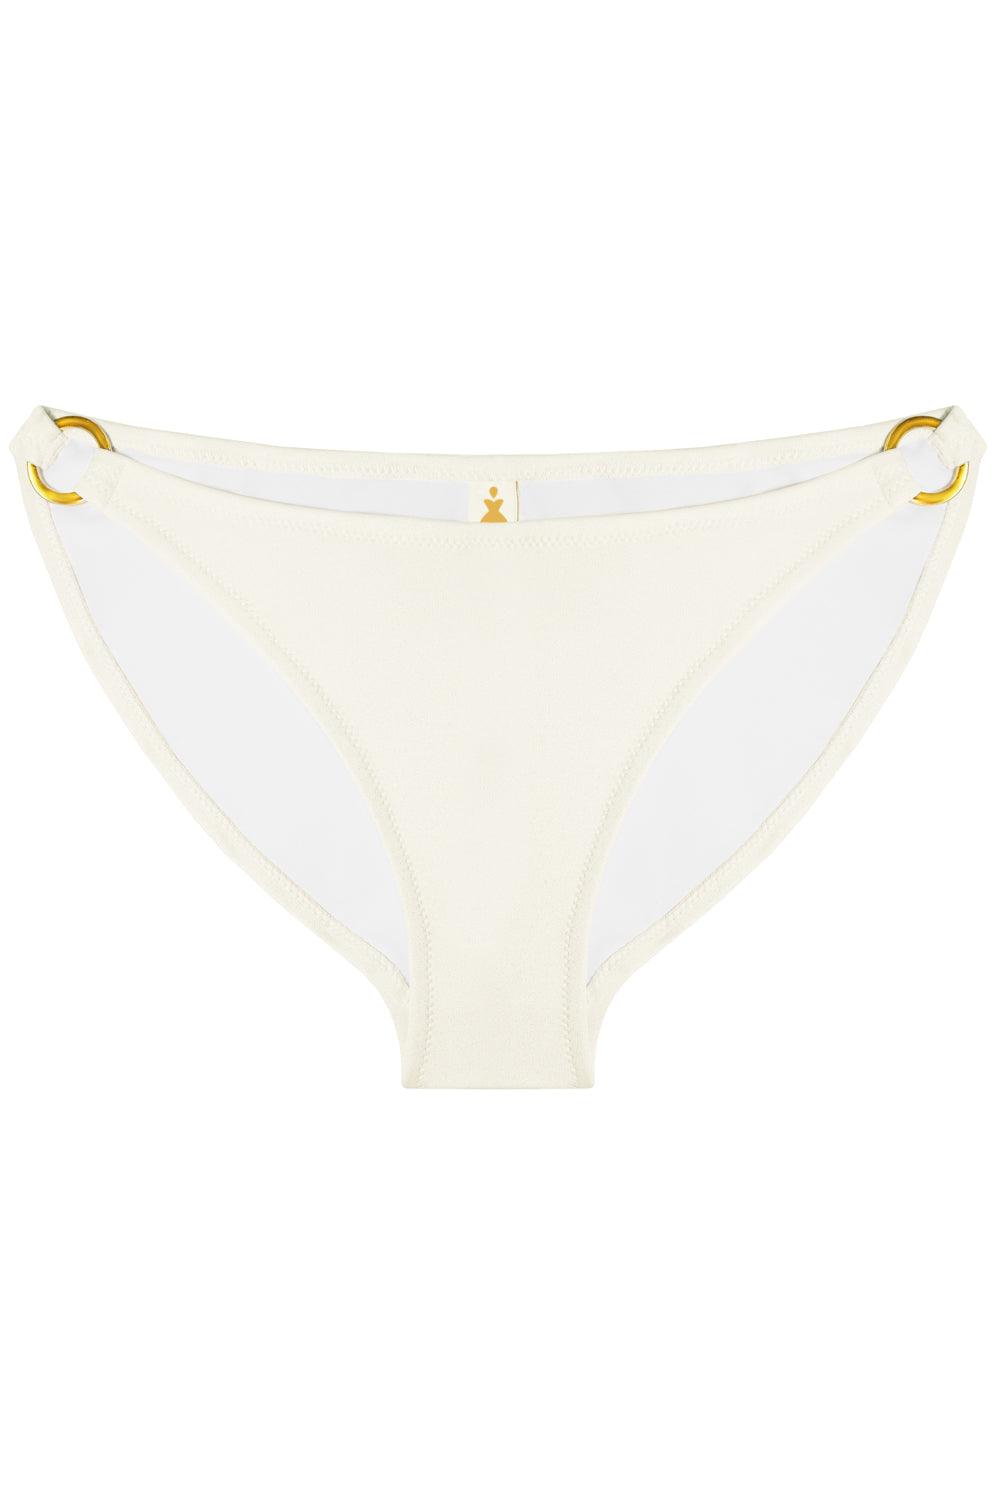 Titaniya Gold Ivory bikini bottom - Bikini bottom by yesUndress. Shop on yesUndress